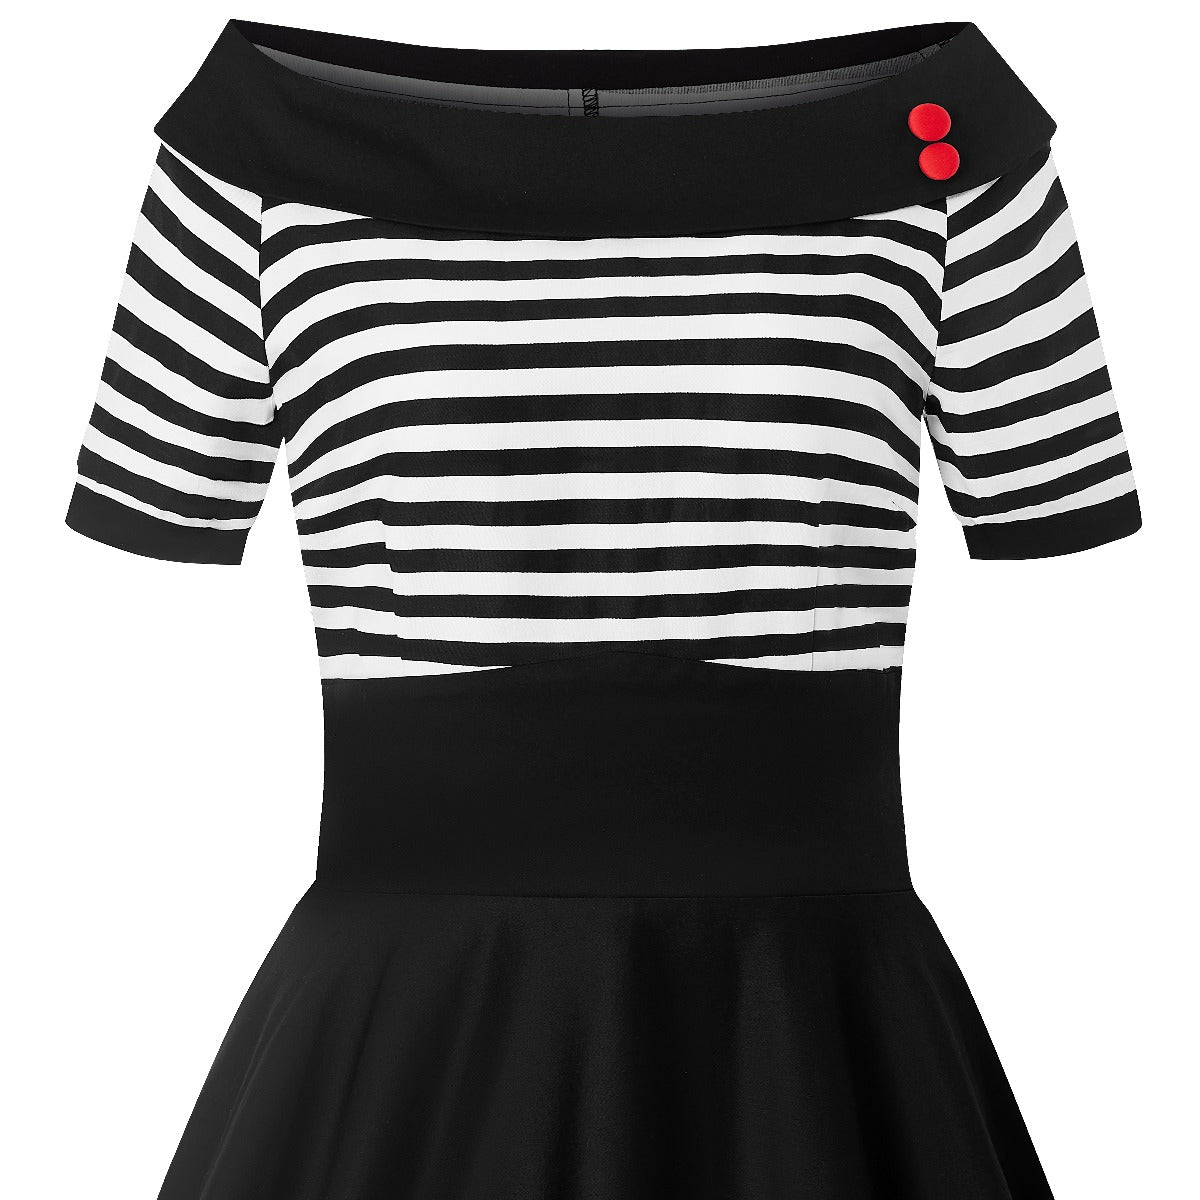 Bateau neckline Darlene dress, in black and write stripes, close up view